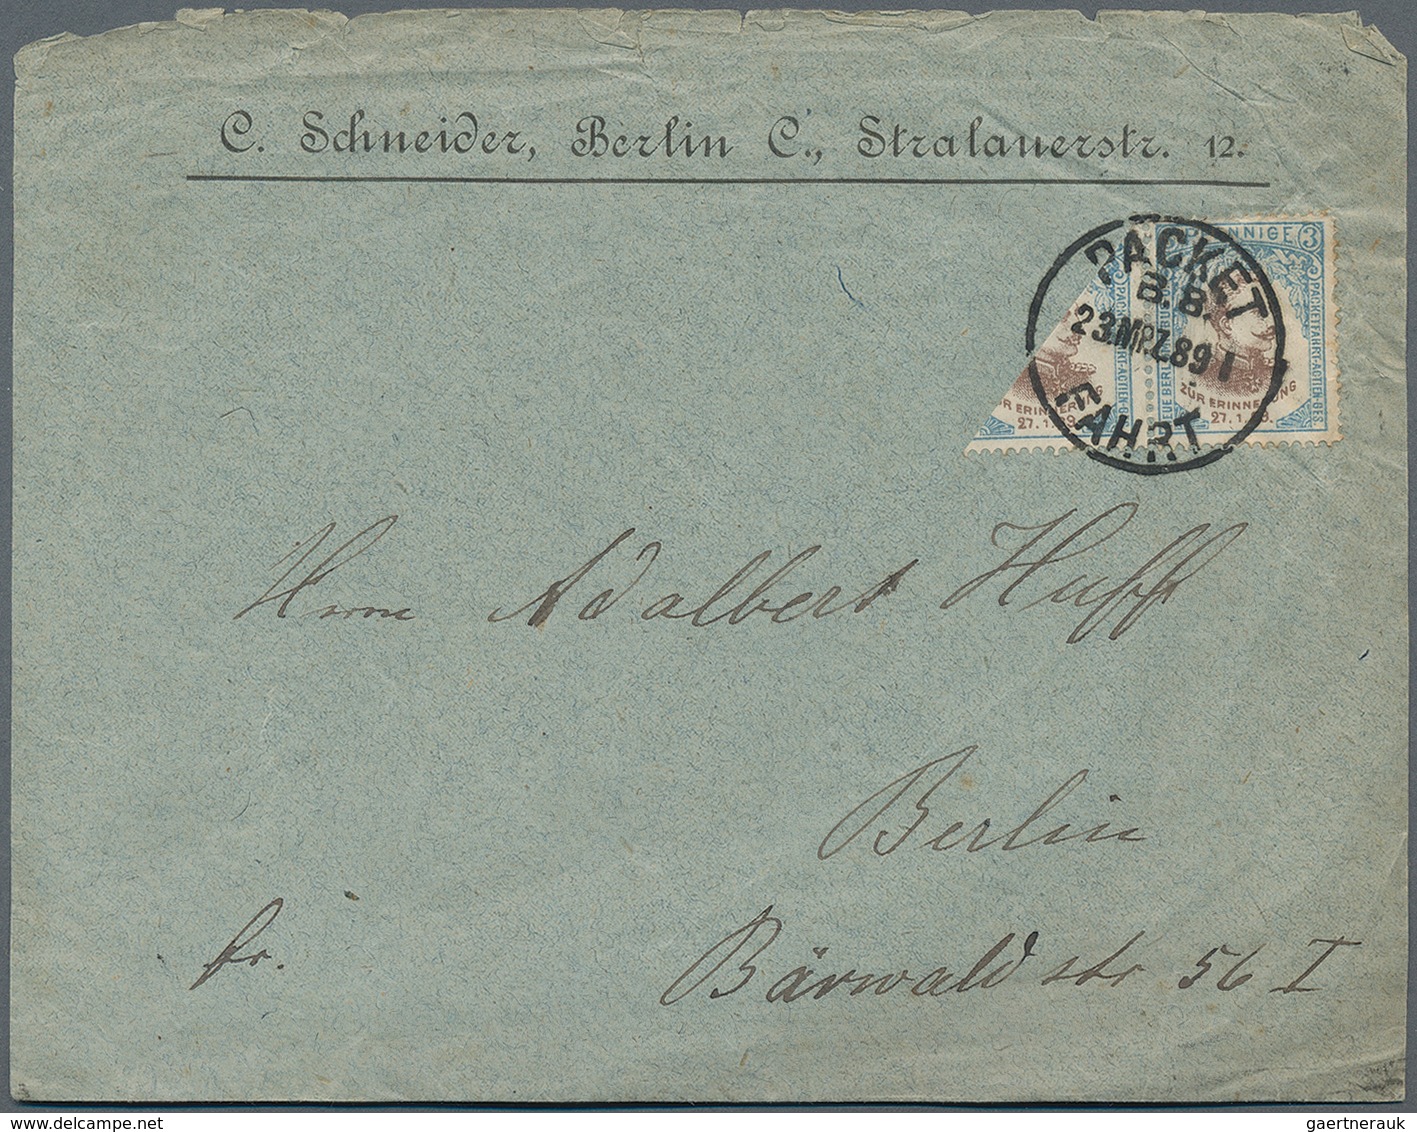 Deutsches Reich - Privatpost (Stadtpost): BERLIN - Packetfahrt: 1889, 3 Pfg. Kaiser Wilhelm II., Waa - Posta Privata & Locale